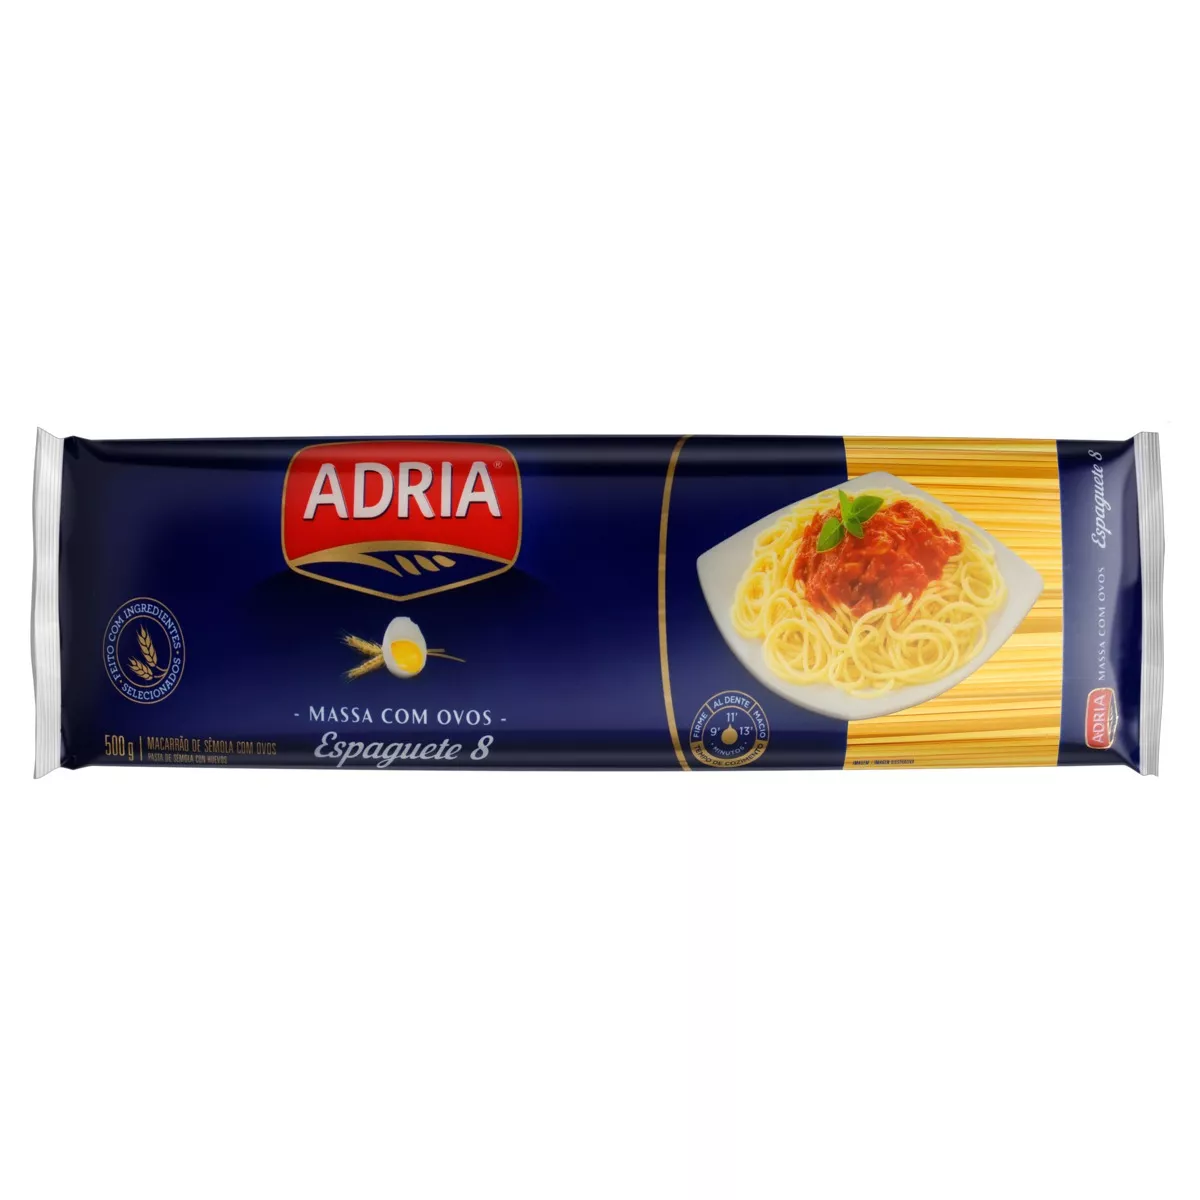 Macarrão De Sêmola Com Ovos Espaguete 8 Adria Pacote 500g